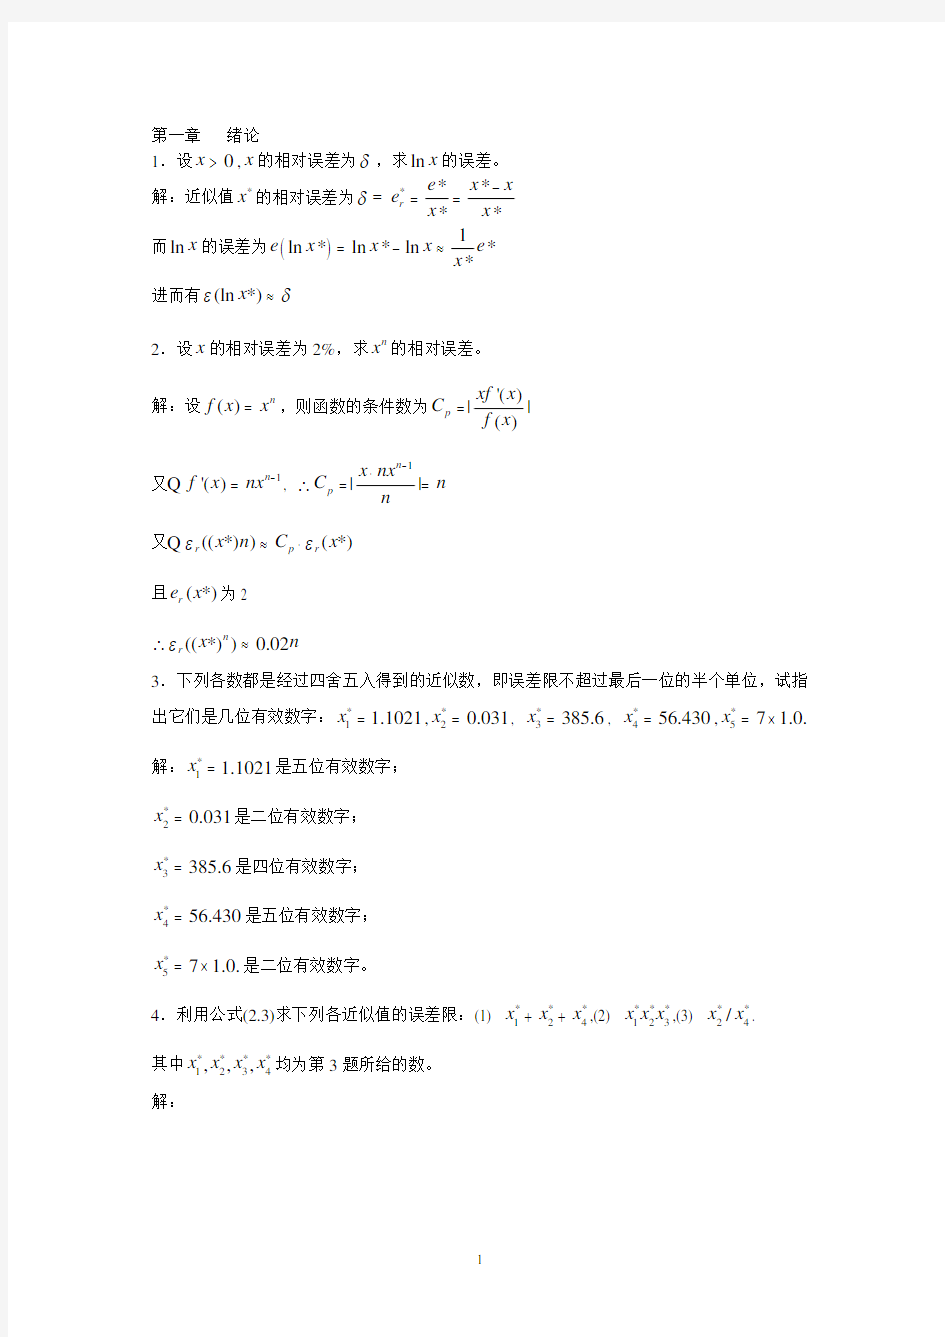 数值分析第五版_李庆扬_王能超_易大义主编课后习题答案